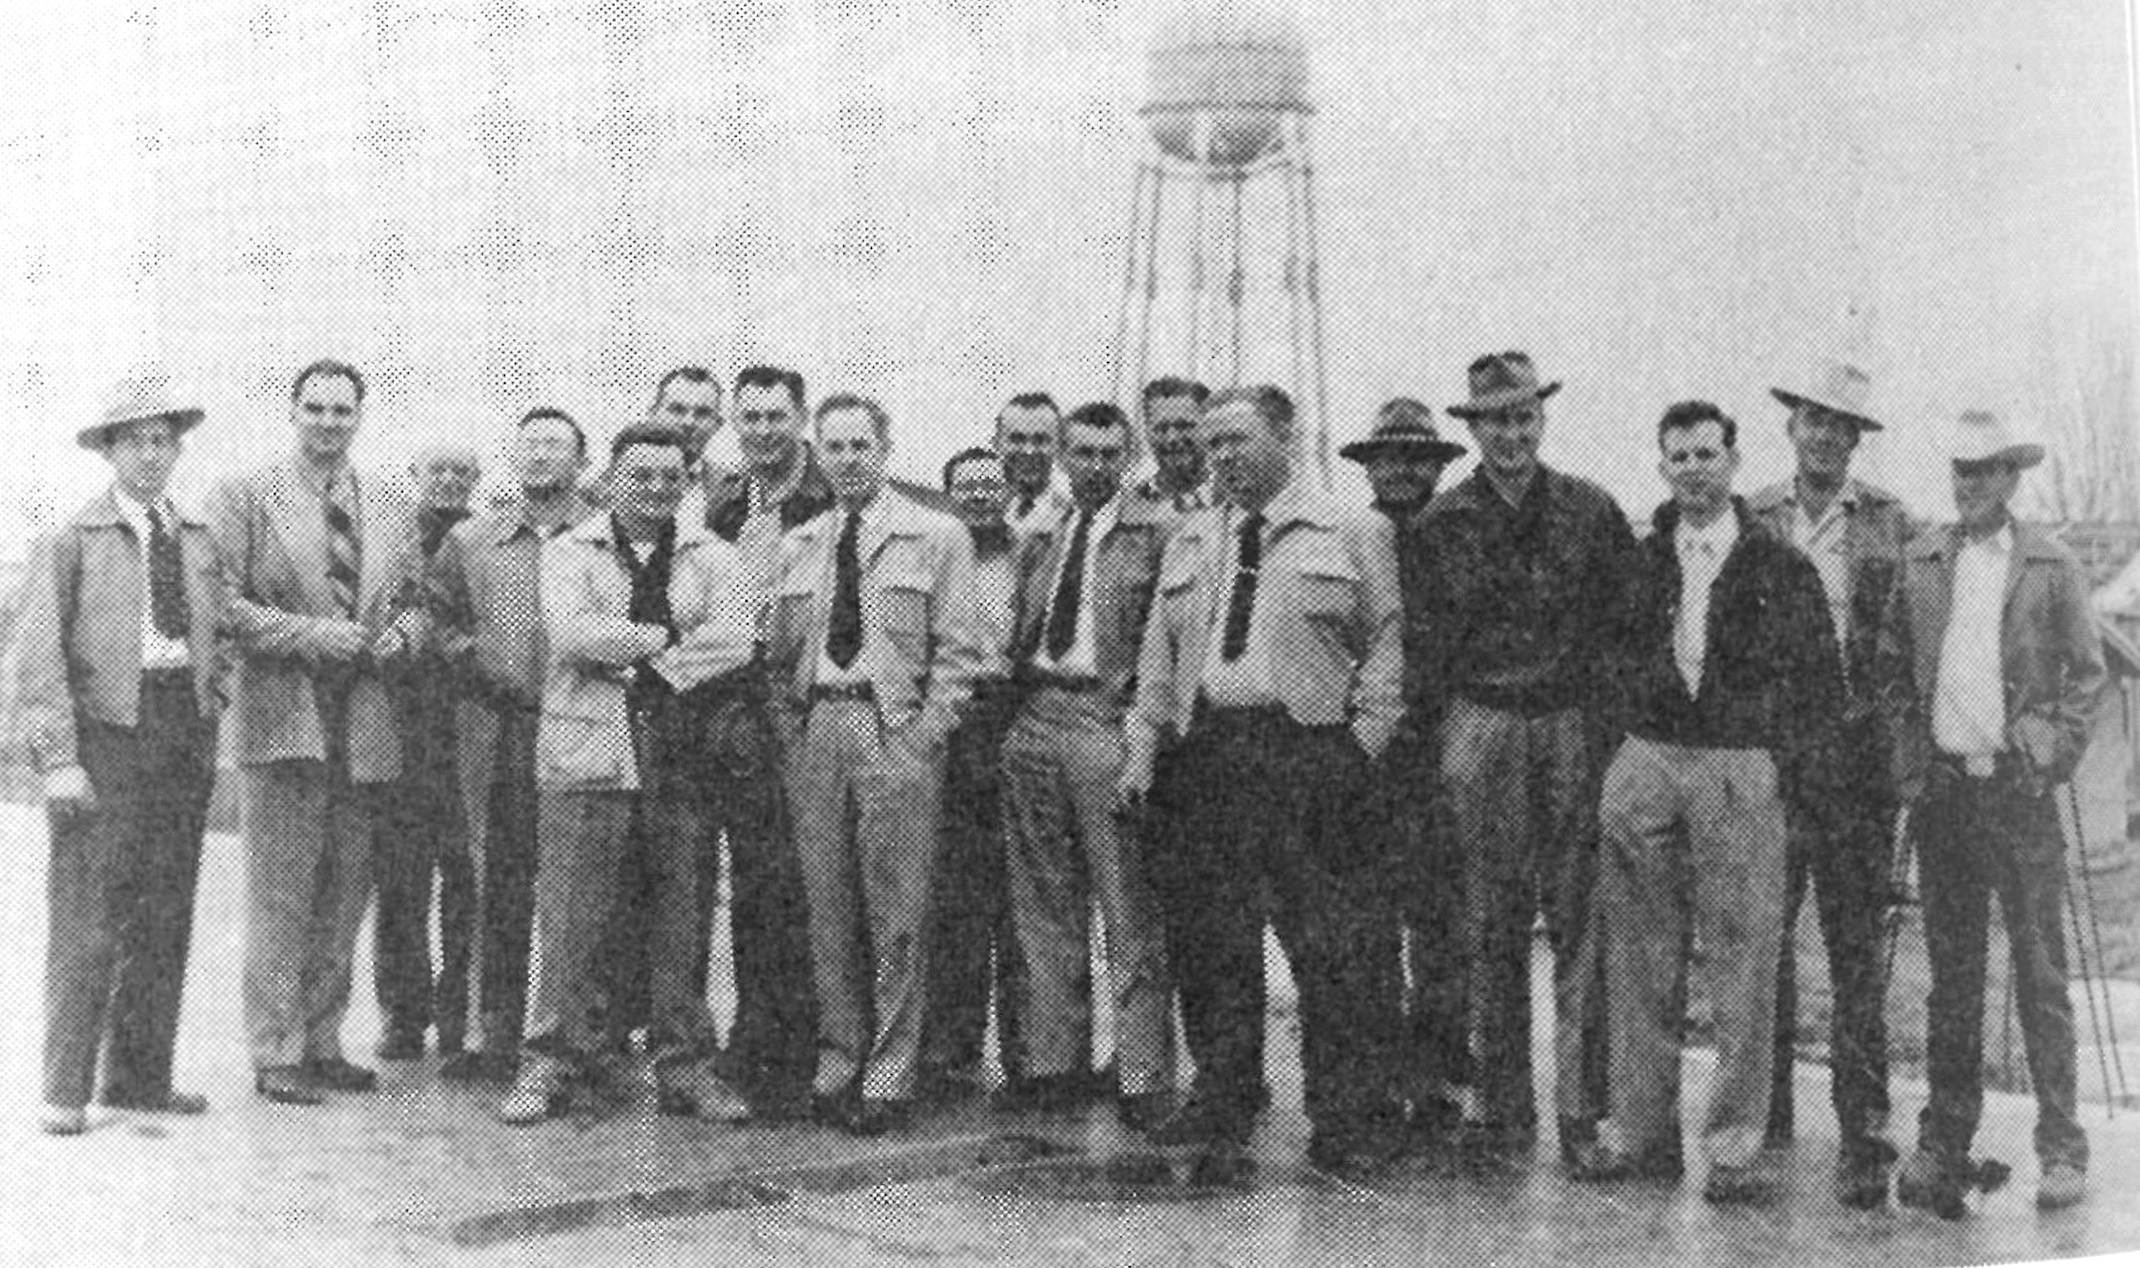 Ag faculty group photo, December 1952